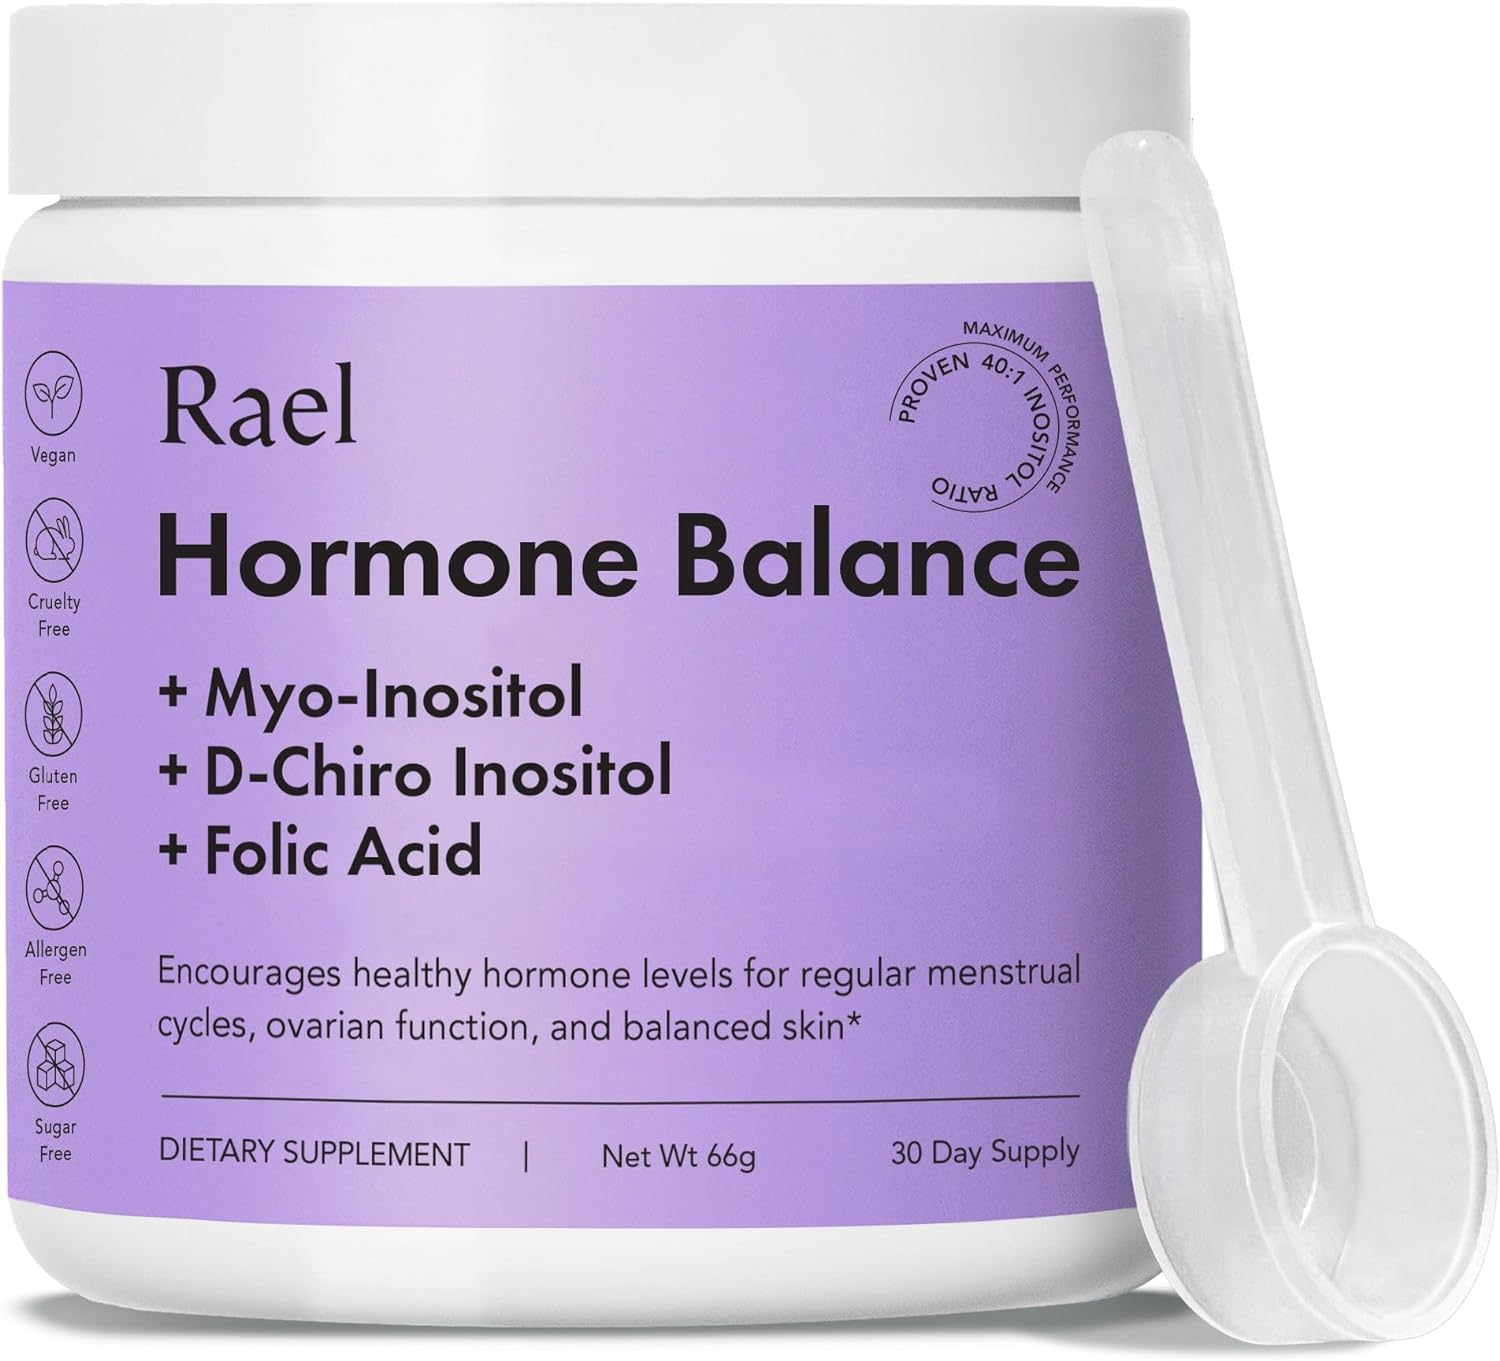 Rael Hormone Balance for Women, Myo Inositol Powder - Myo-Inositol & D-Chiro Inositol Supplement, Menstrual & Ovarian Function, Vitamin B8, 40:1 Ratio, Folic Acid, Vegan (30 Day Supply)